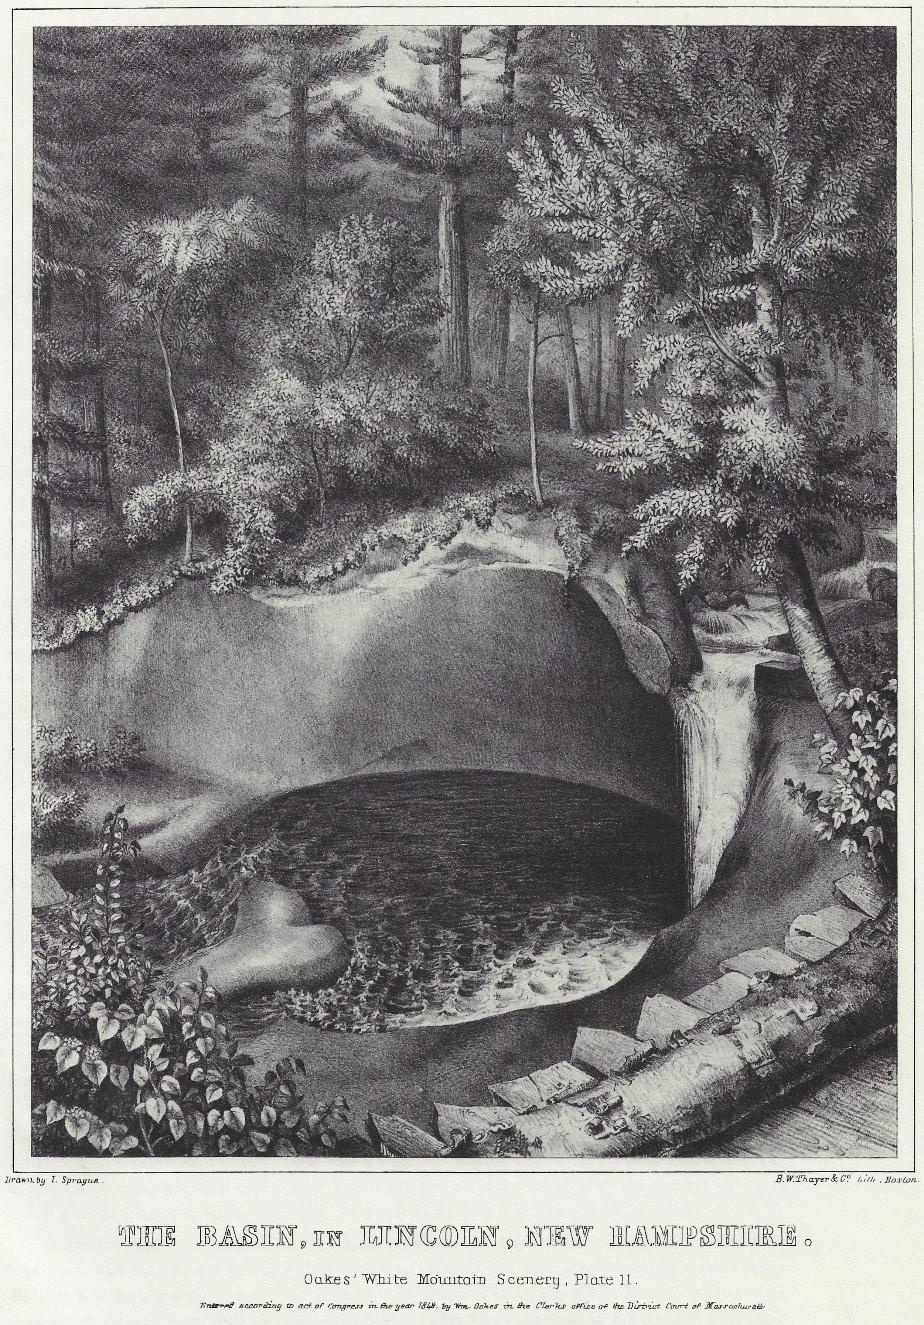 Oakes' White Mountain Scenery - 1848 the Basin